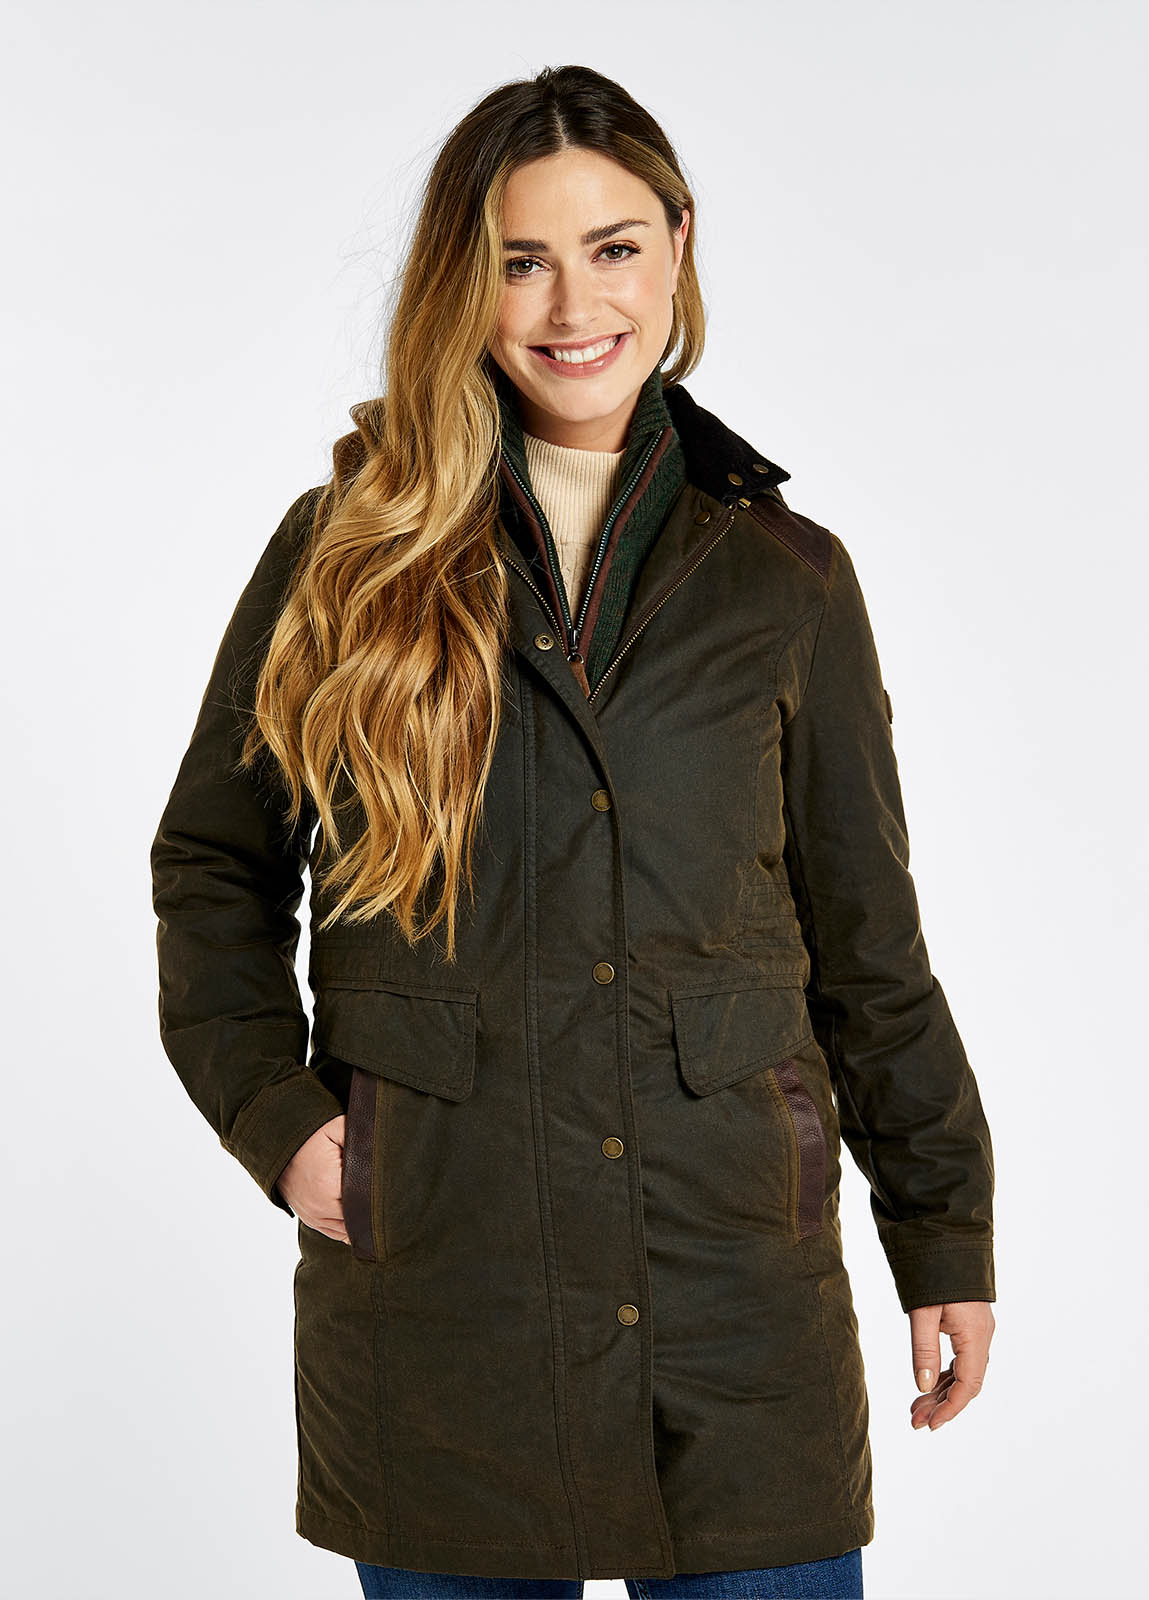 Womens Jacket UK 12 14 Military Style Look Rookie Ladies Jacket